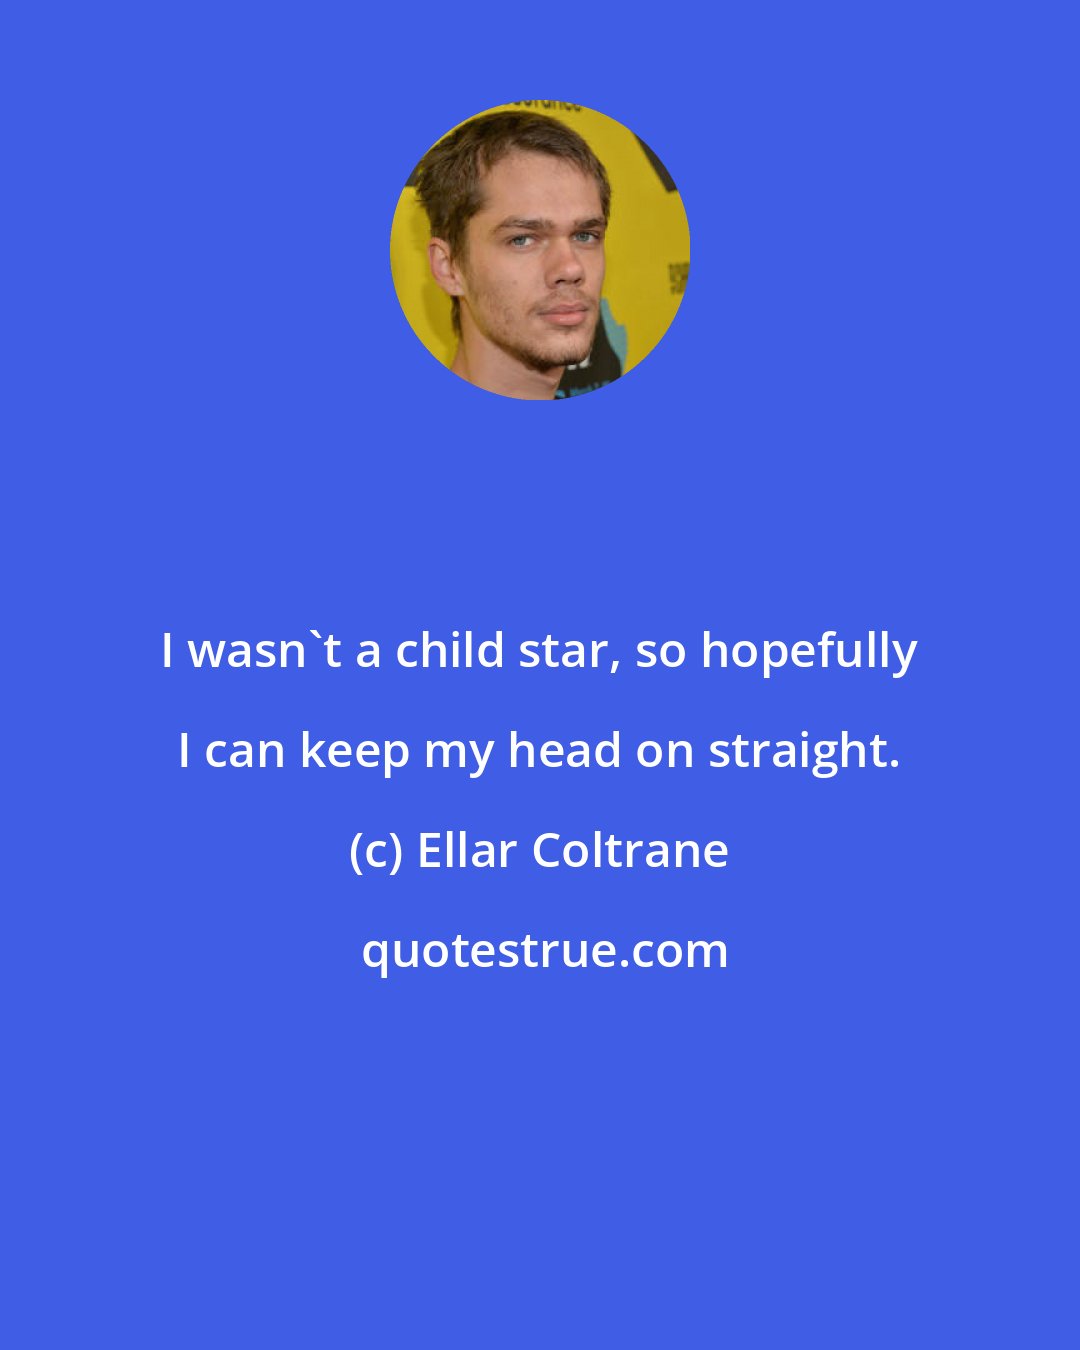 Ellar Coltrane: I wasn't a child star, so hopefully I can keep my head on straight.